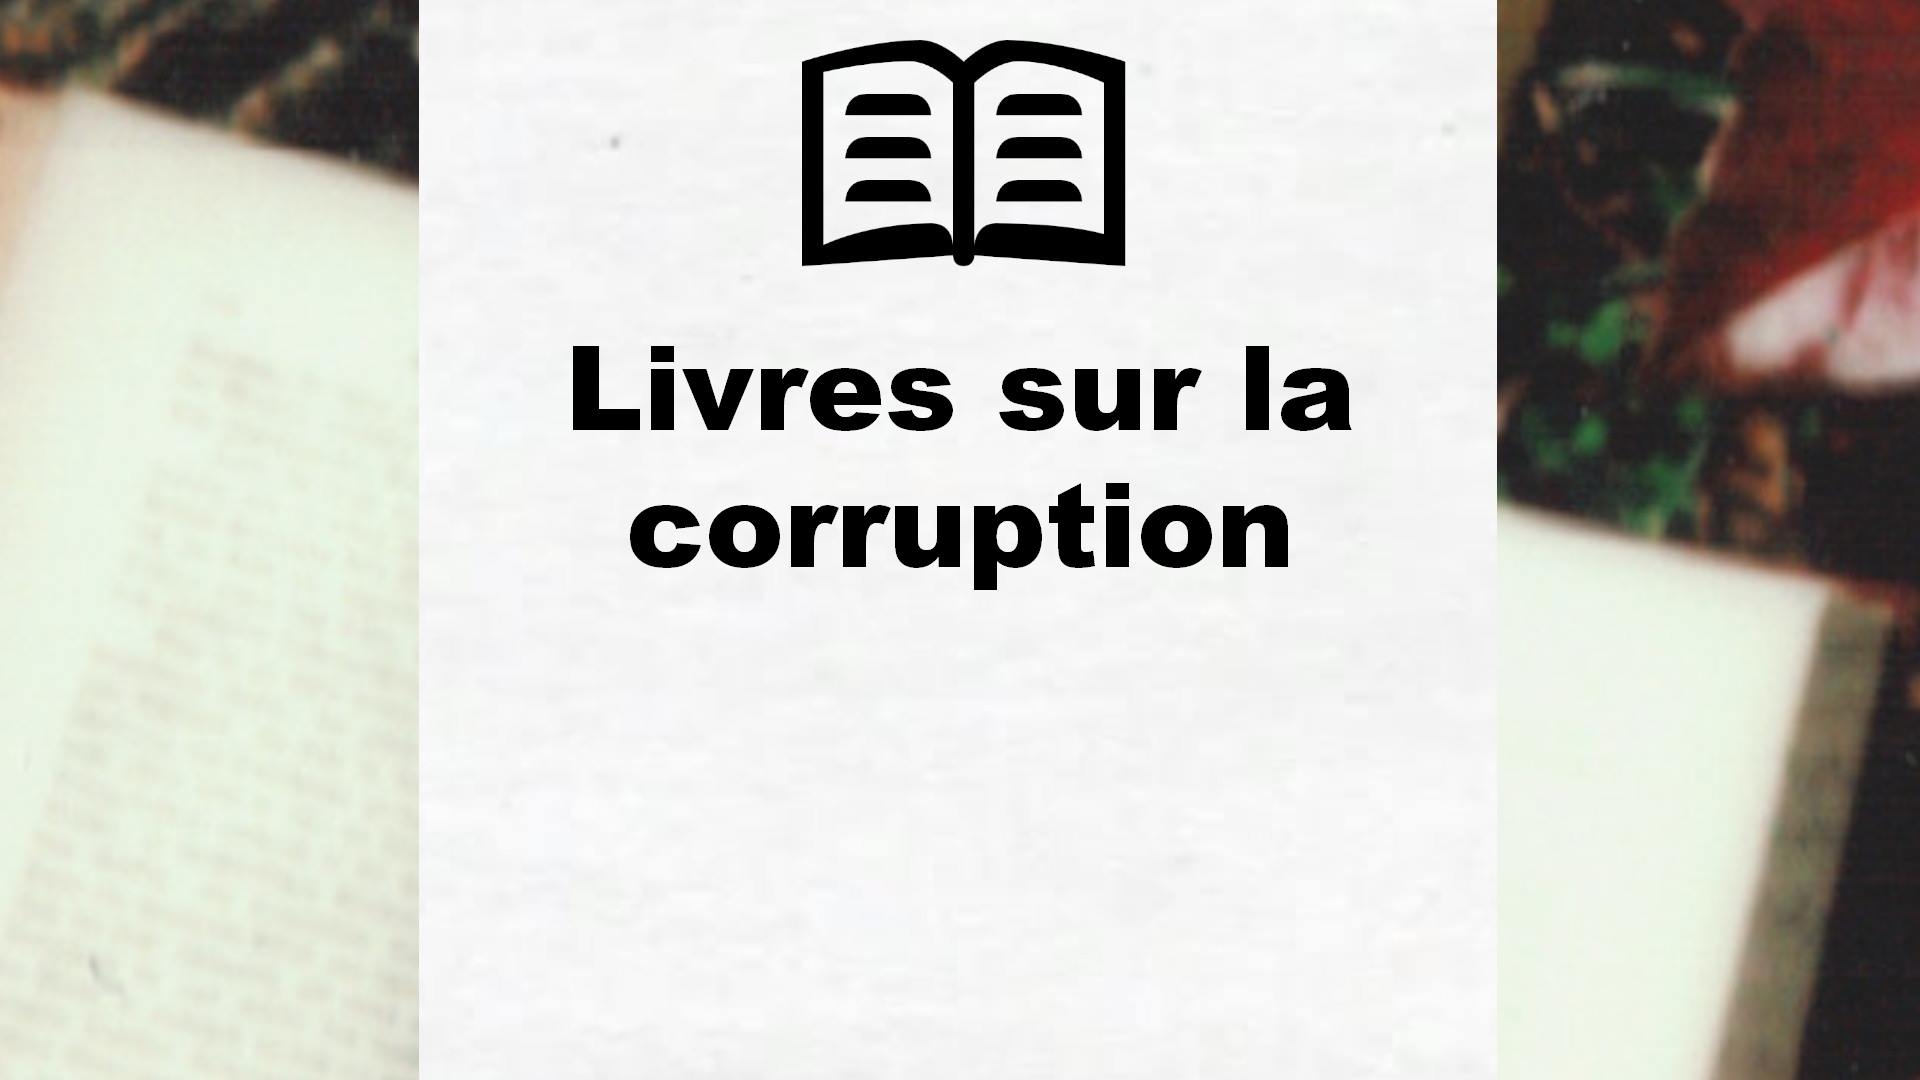 Livres sur la corruption